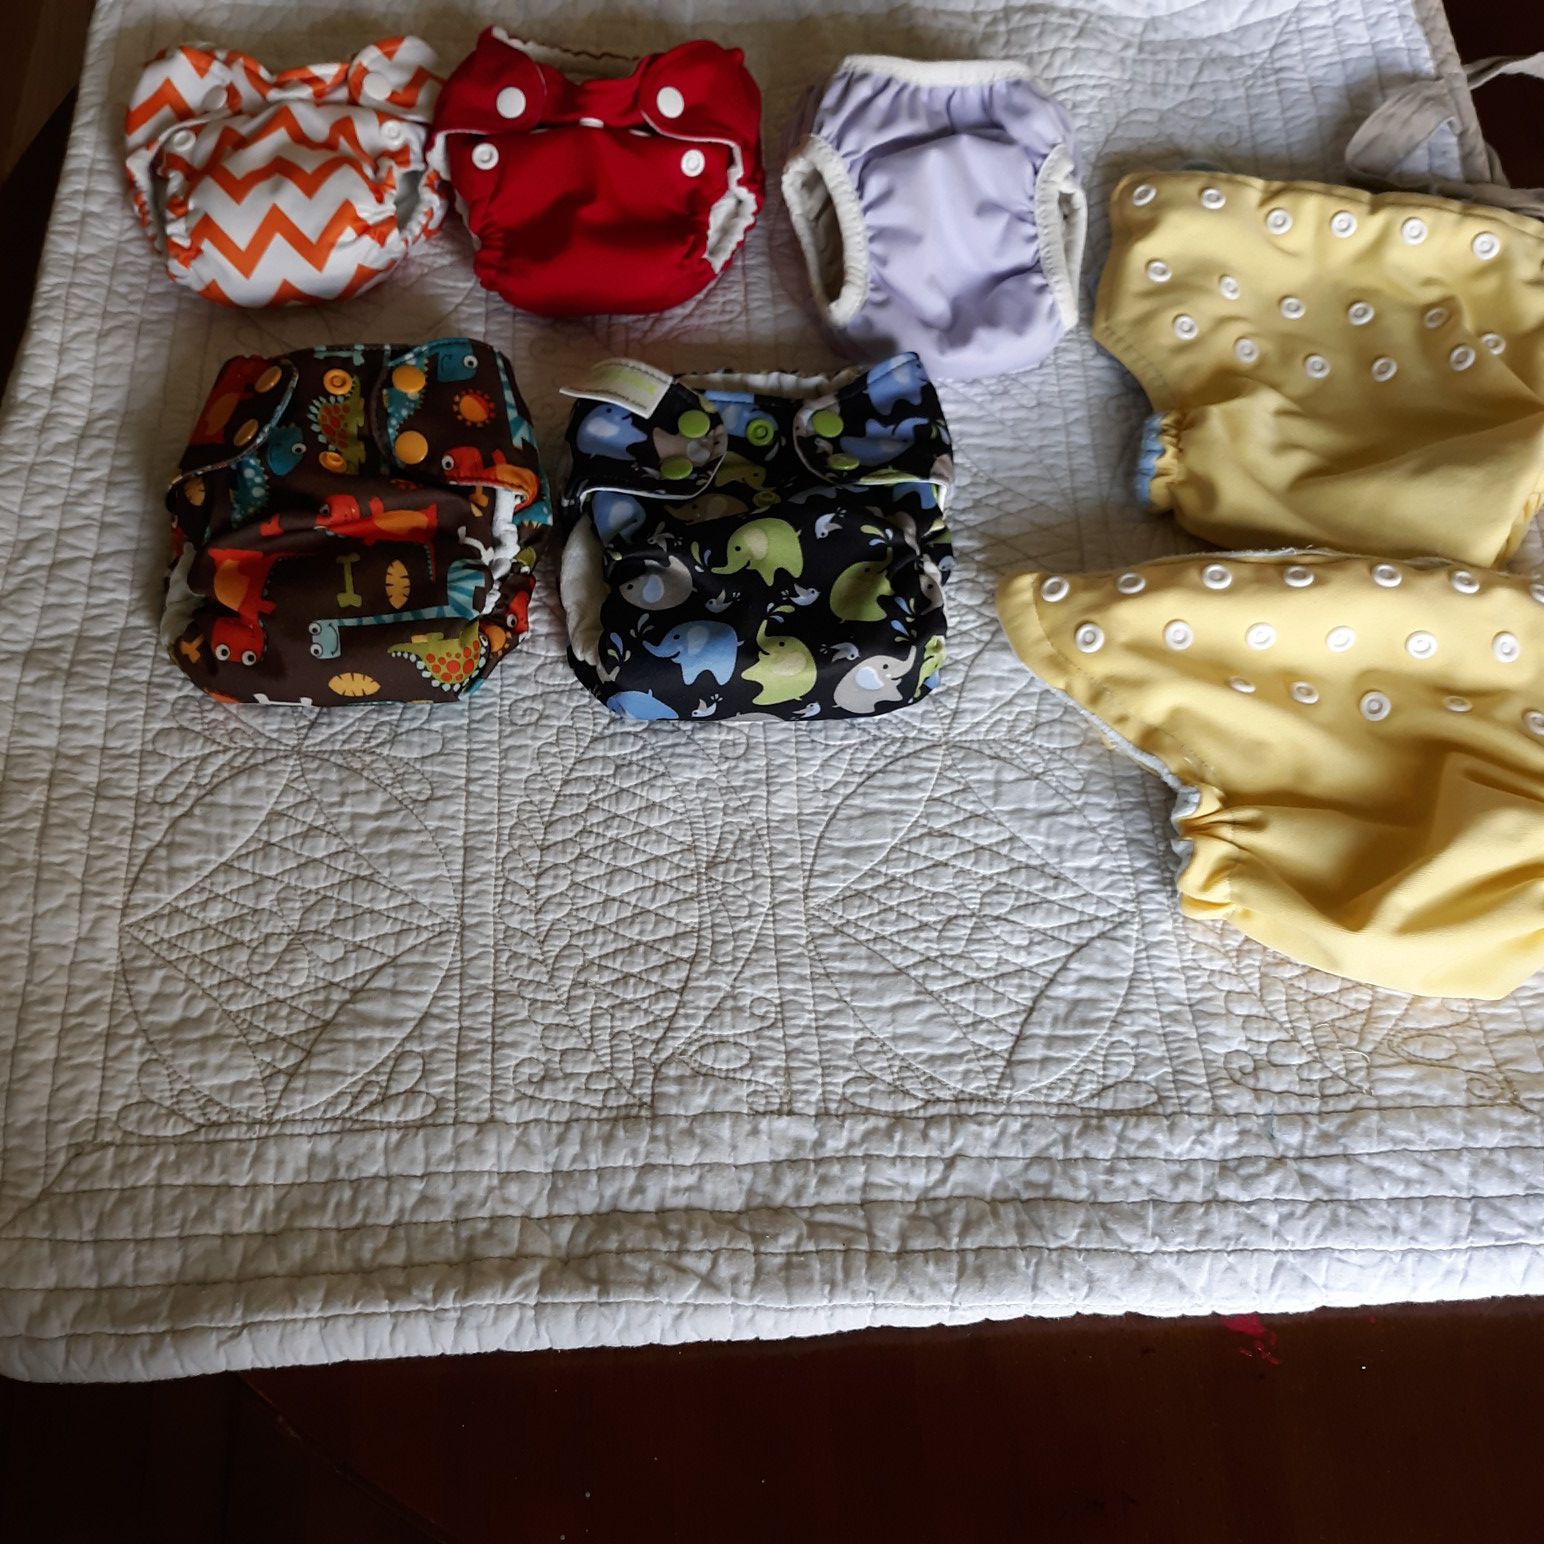 Newborn cloth diapers